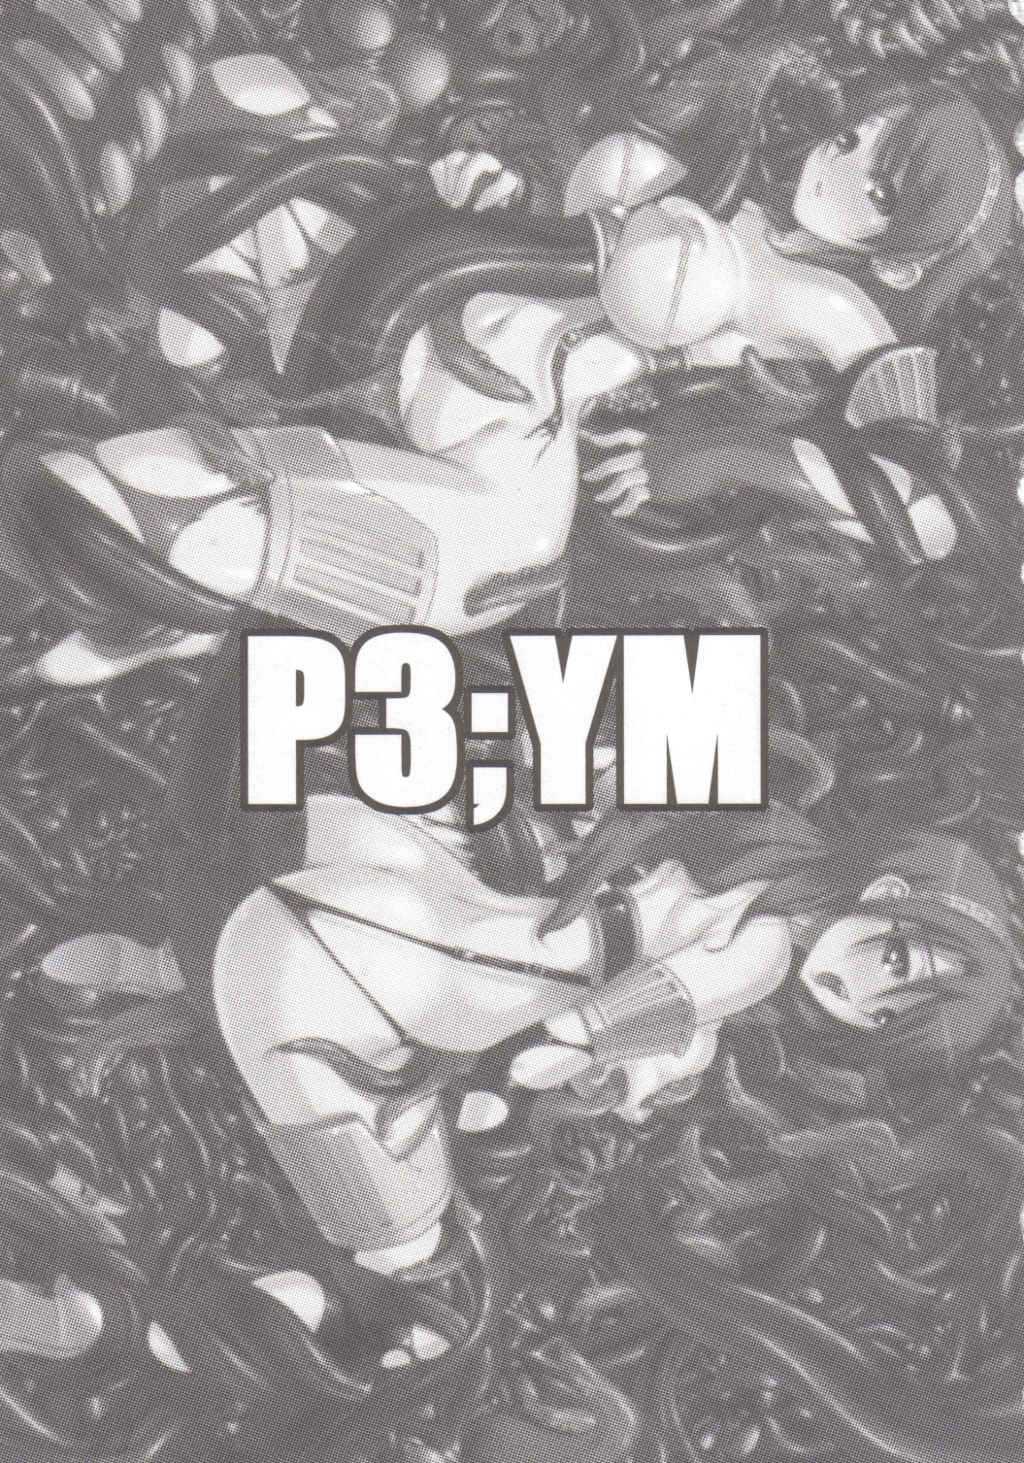 [Darabuchidou] P3;YM (Persona 3) 